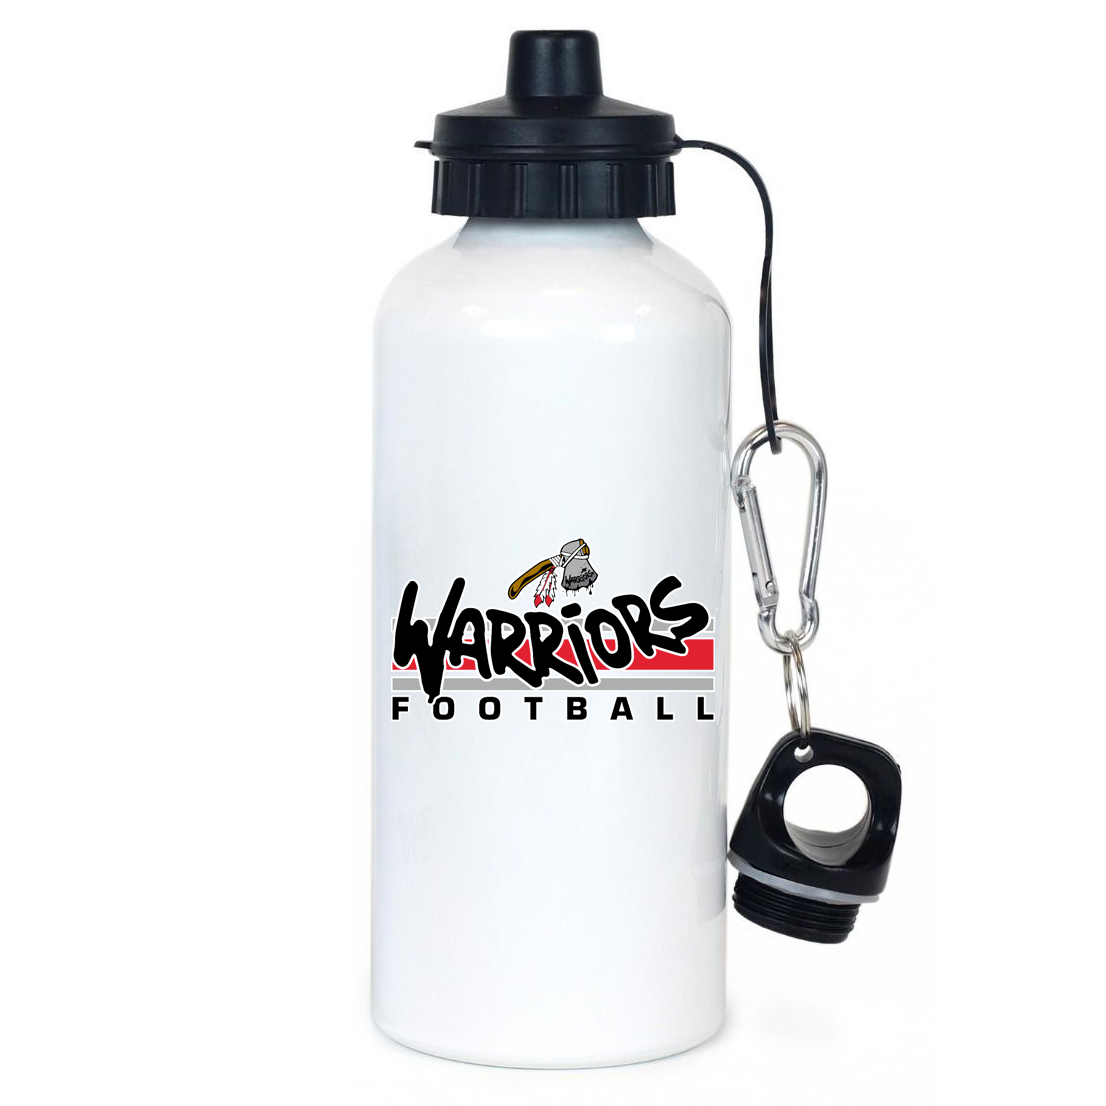 WV Warriors Football Team Water Bottle